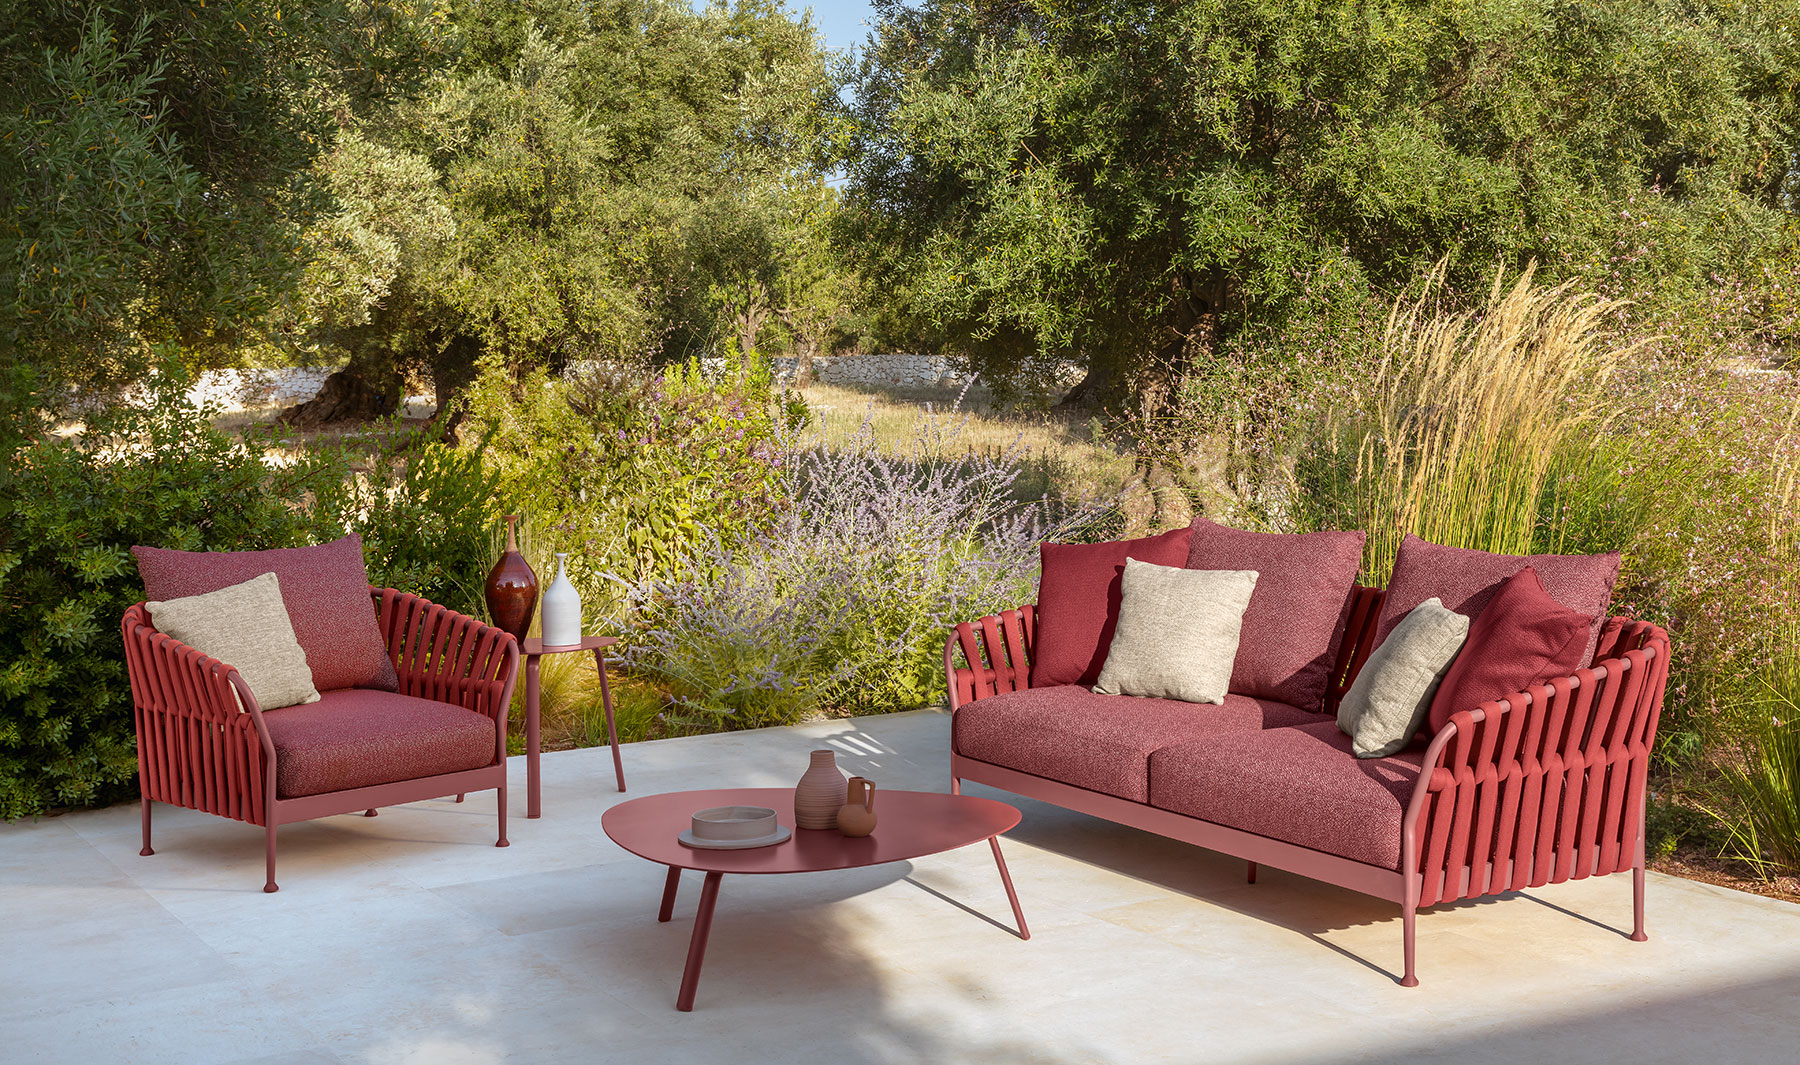 Salon de jardin rouge en aluminium. Vente en ligne de meubles de jardin haut de gamme pour jardins et terrasses avec livraison gratuite.